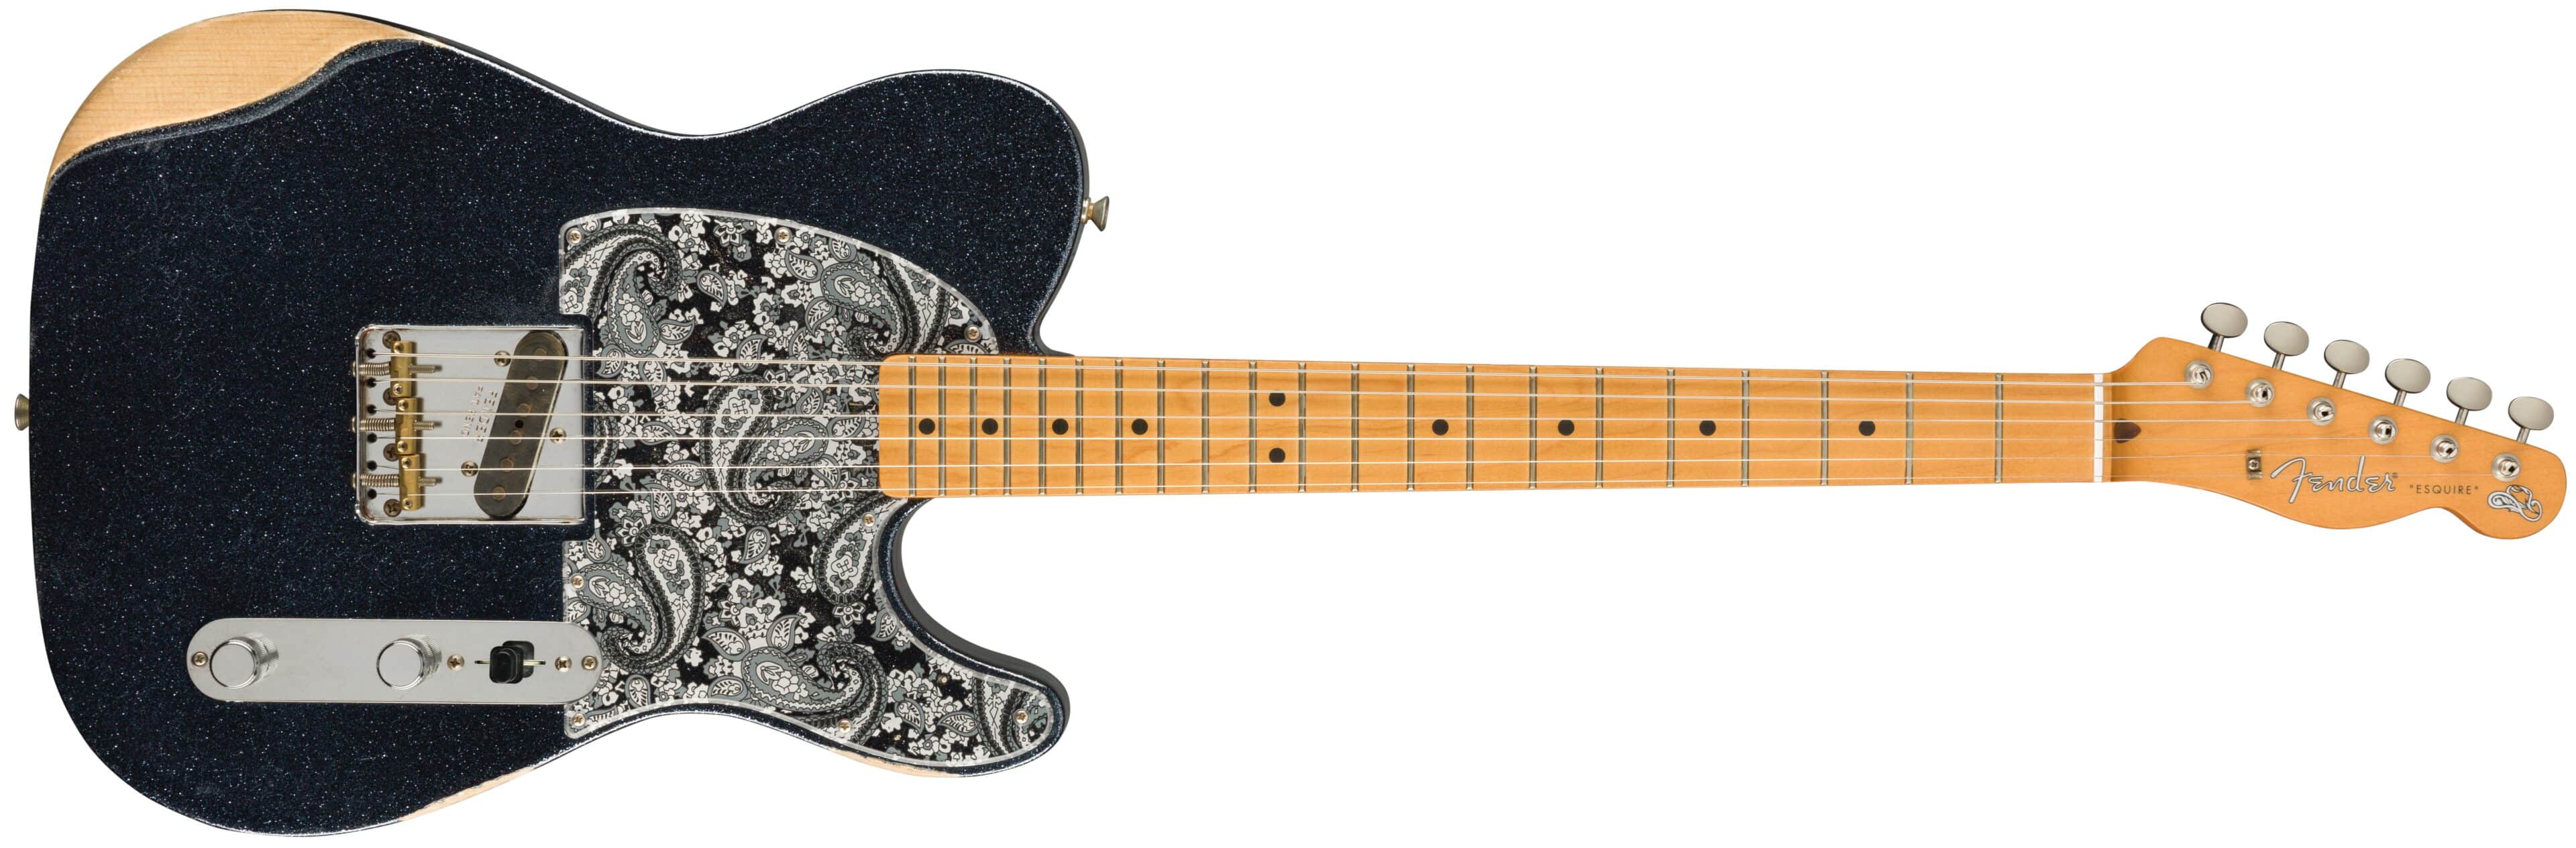 Fender Introduces The Brad Paisley Signature Esquire